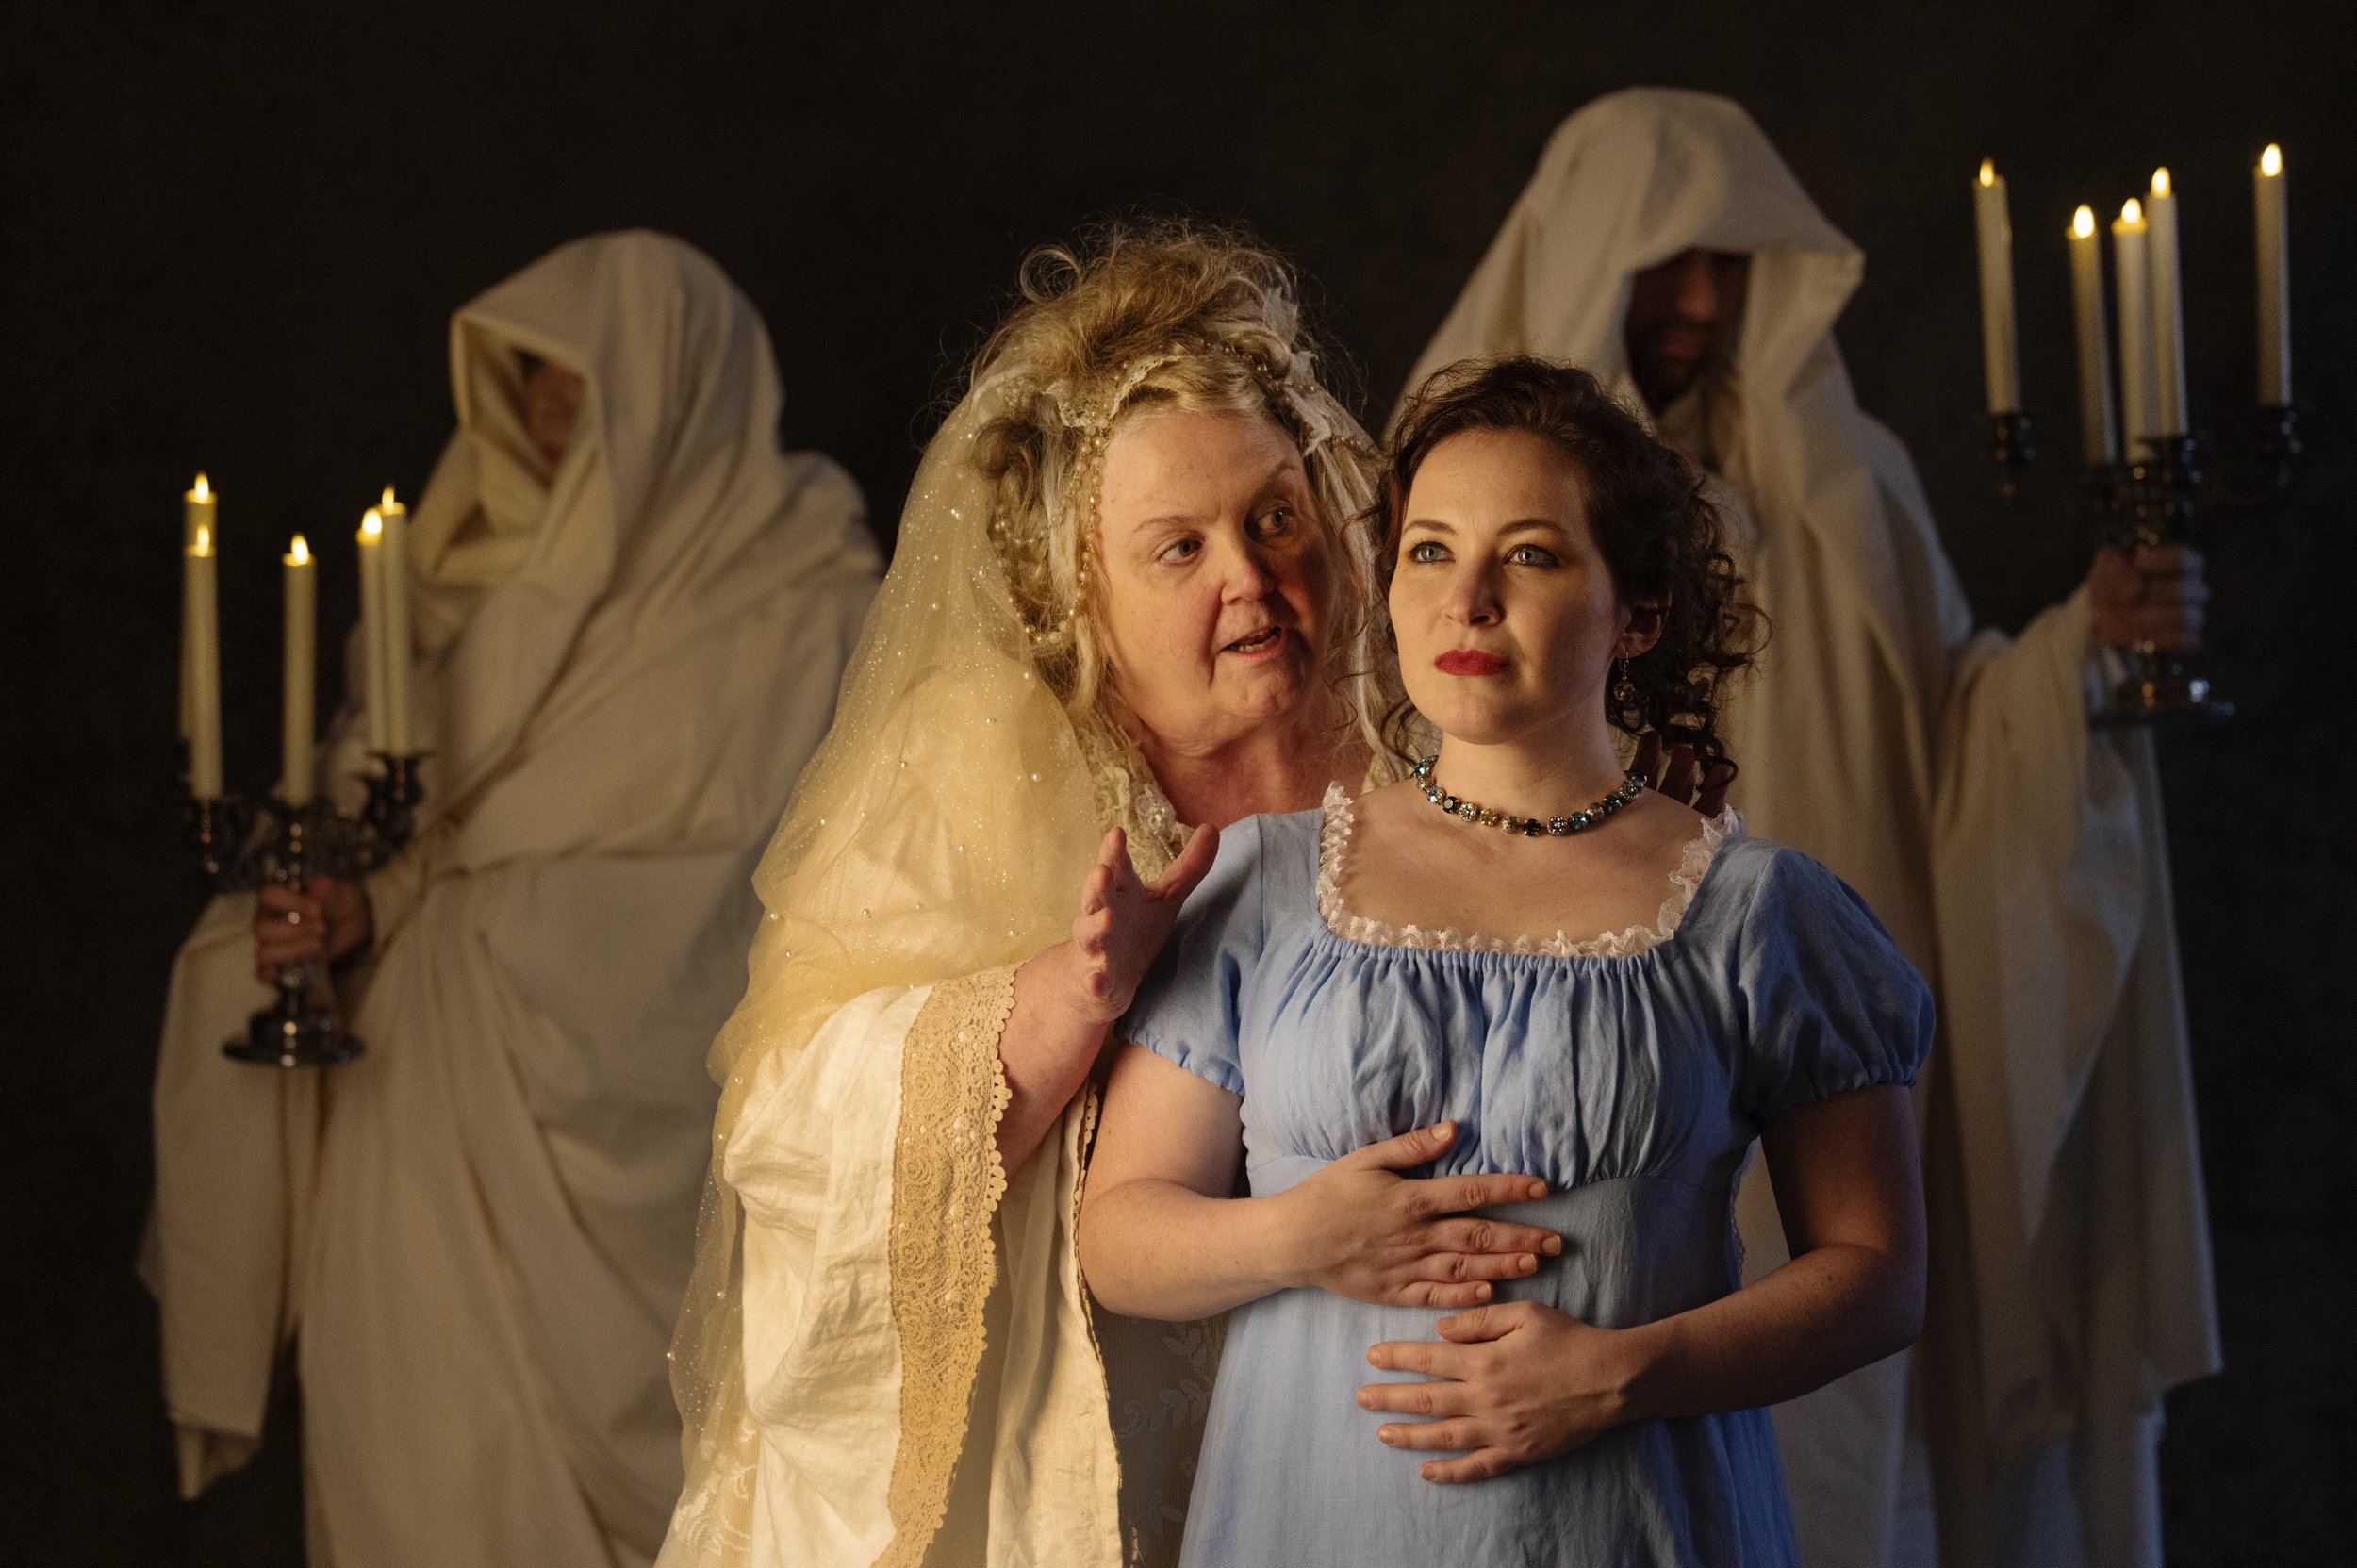 Cynthia Meier as Miss Havisham and Bryn Booth as Estella. Photo by Tim Fuller.